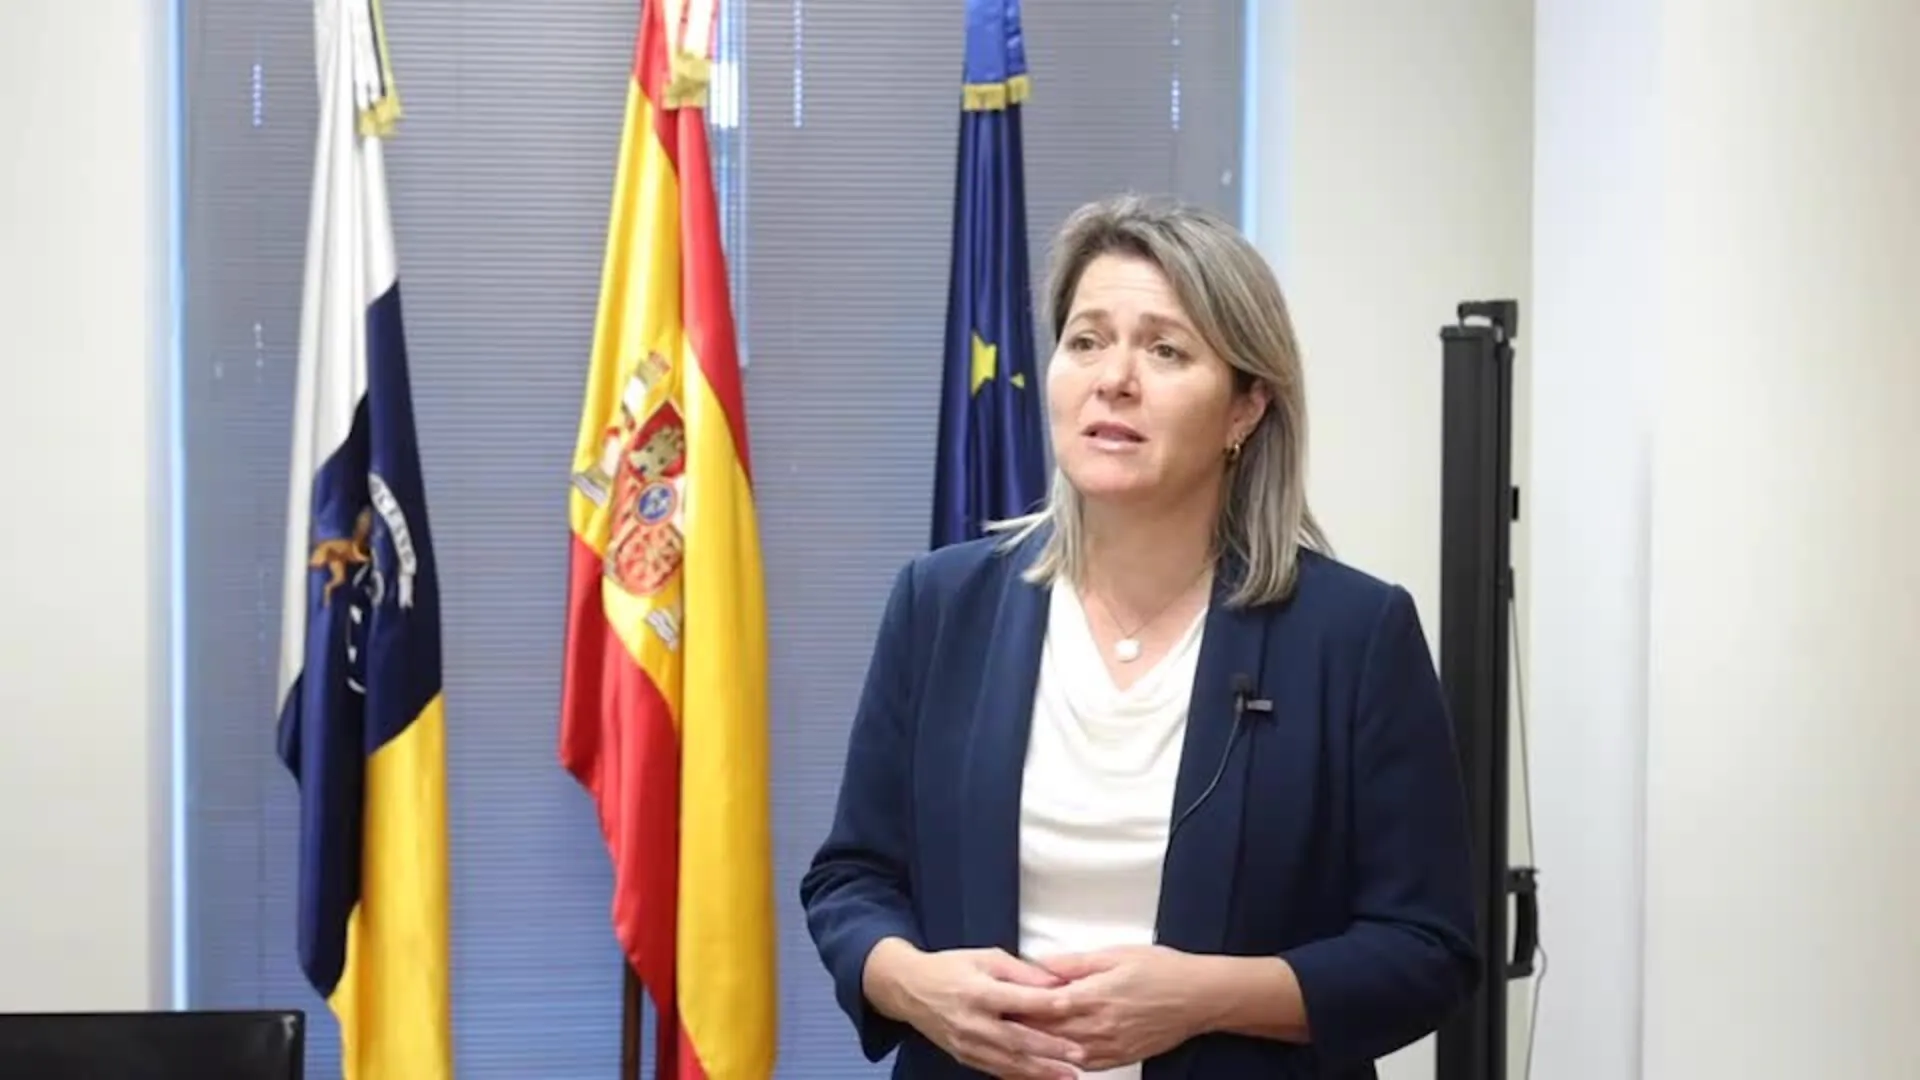 Vanoostende aborda en Bruselas la reconstrucción del sector en La Palma